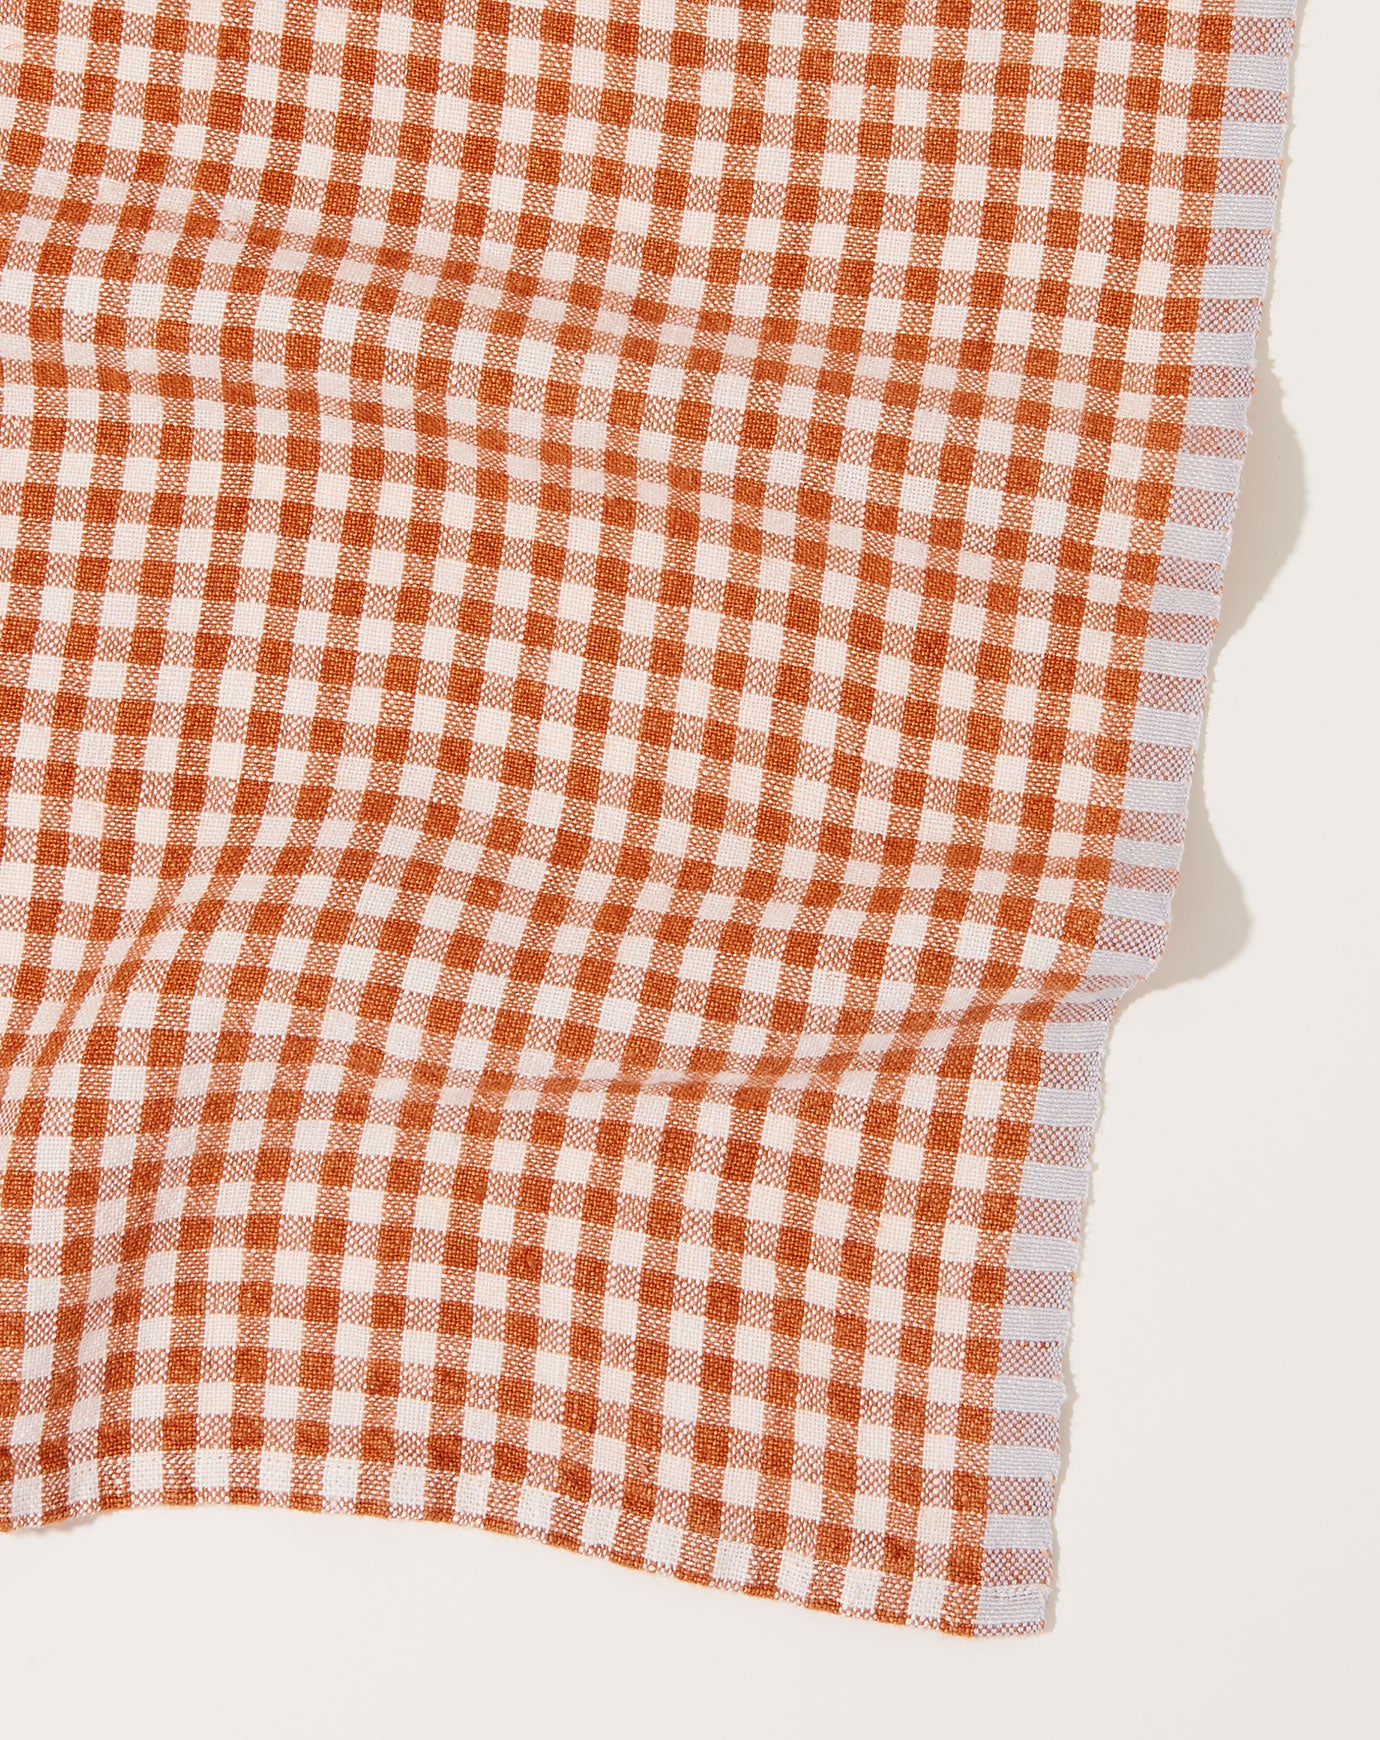 Caravan Gingham Tea Towels, Set of 2 - Aqua/Orange